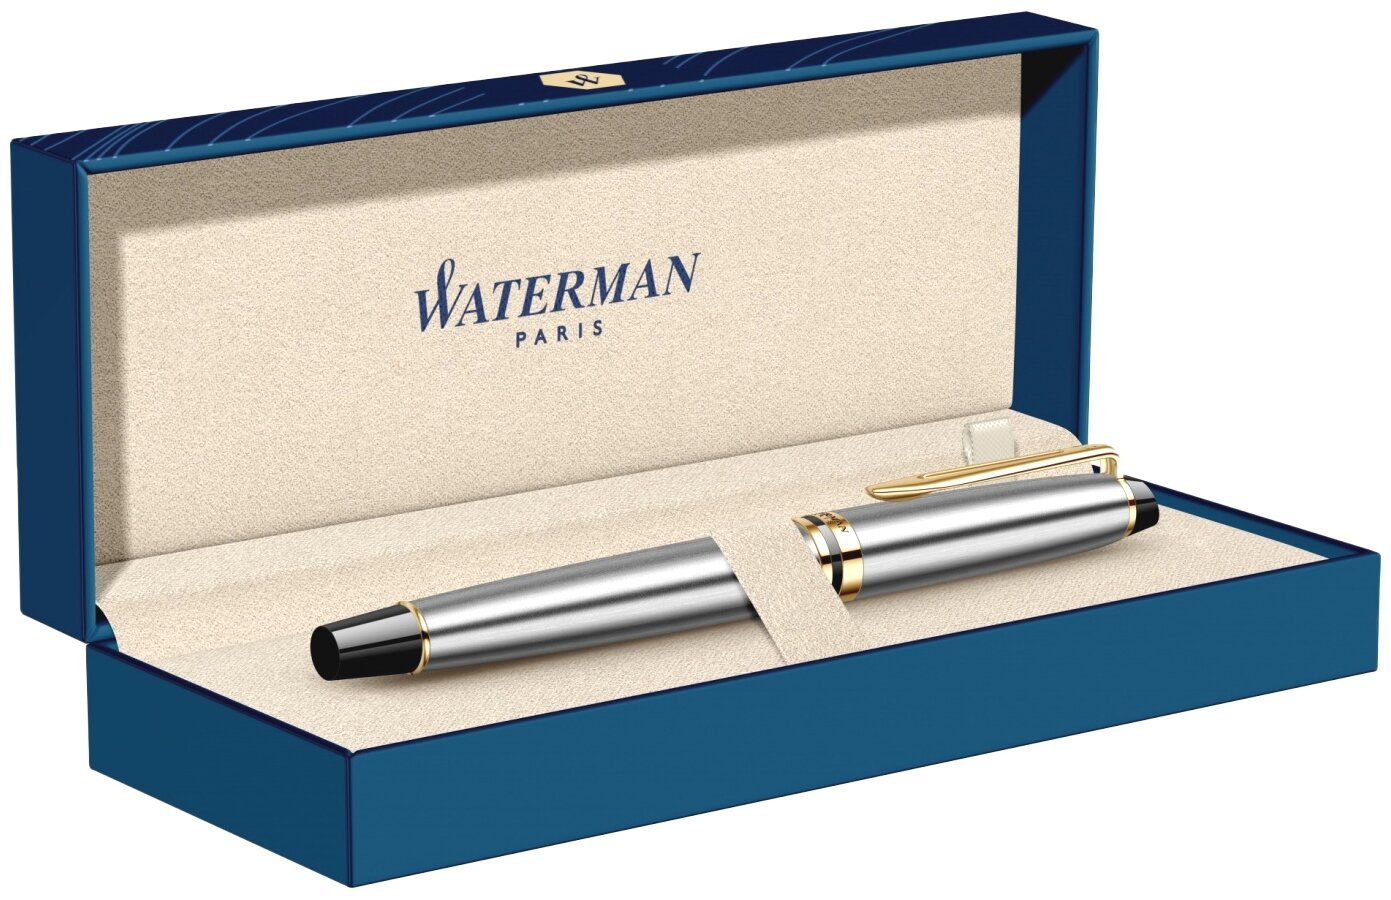 Ручка перьевая Waterman Expert 3 (CWS0951940) Stainless Steel GT F сталь подарочная коробка стреловидный пиш. наконечник круглая